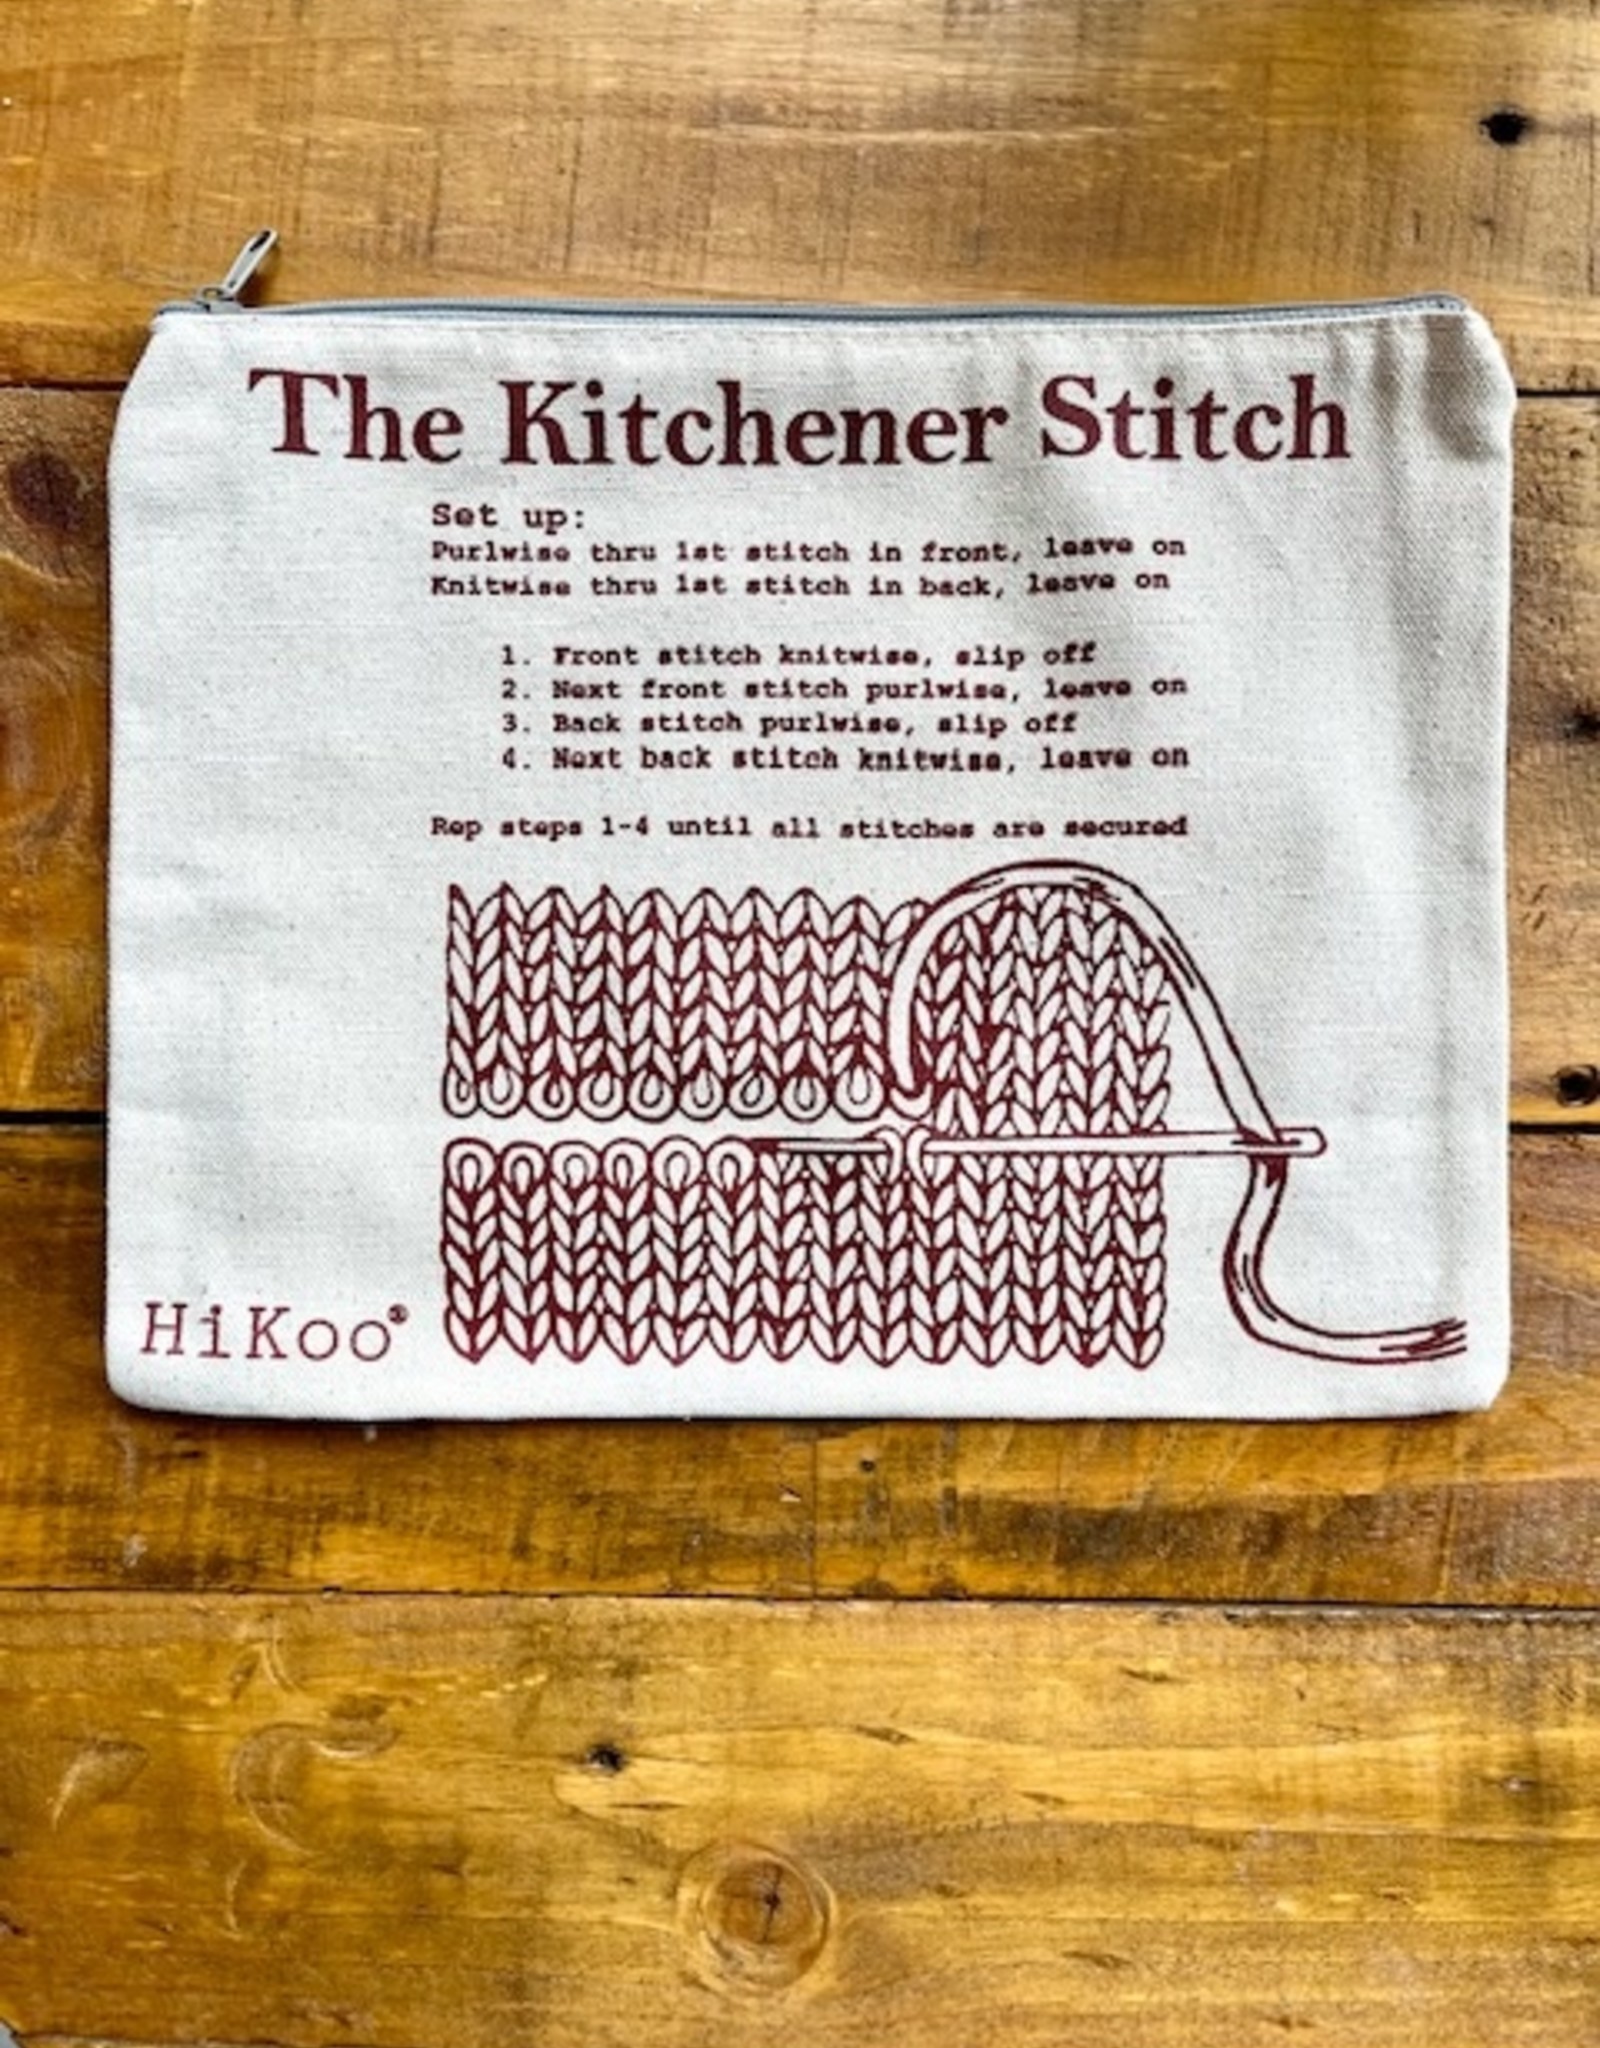 Hikoo Kitchener Stitch Bag